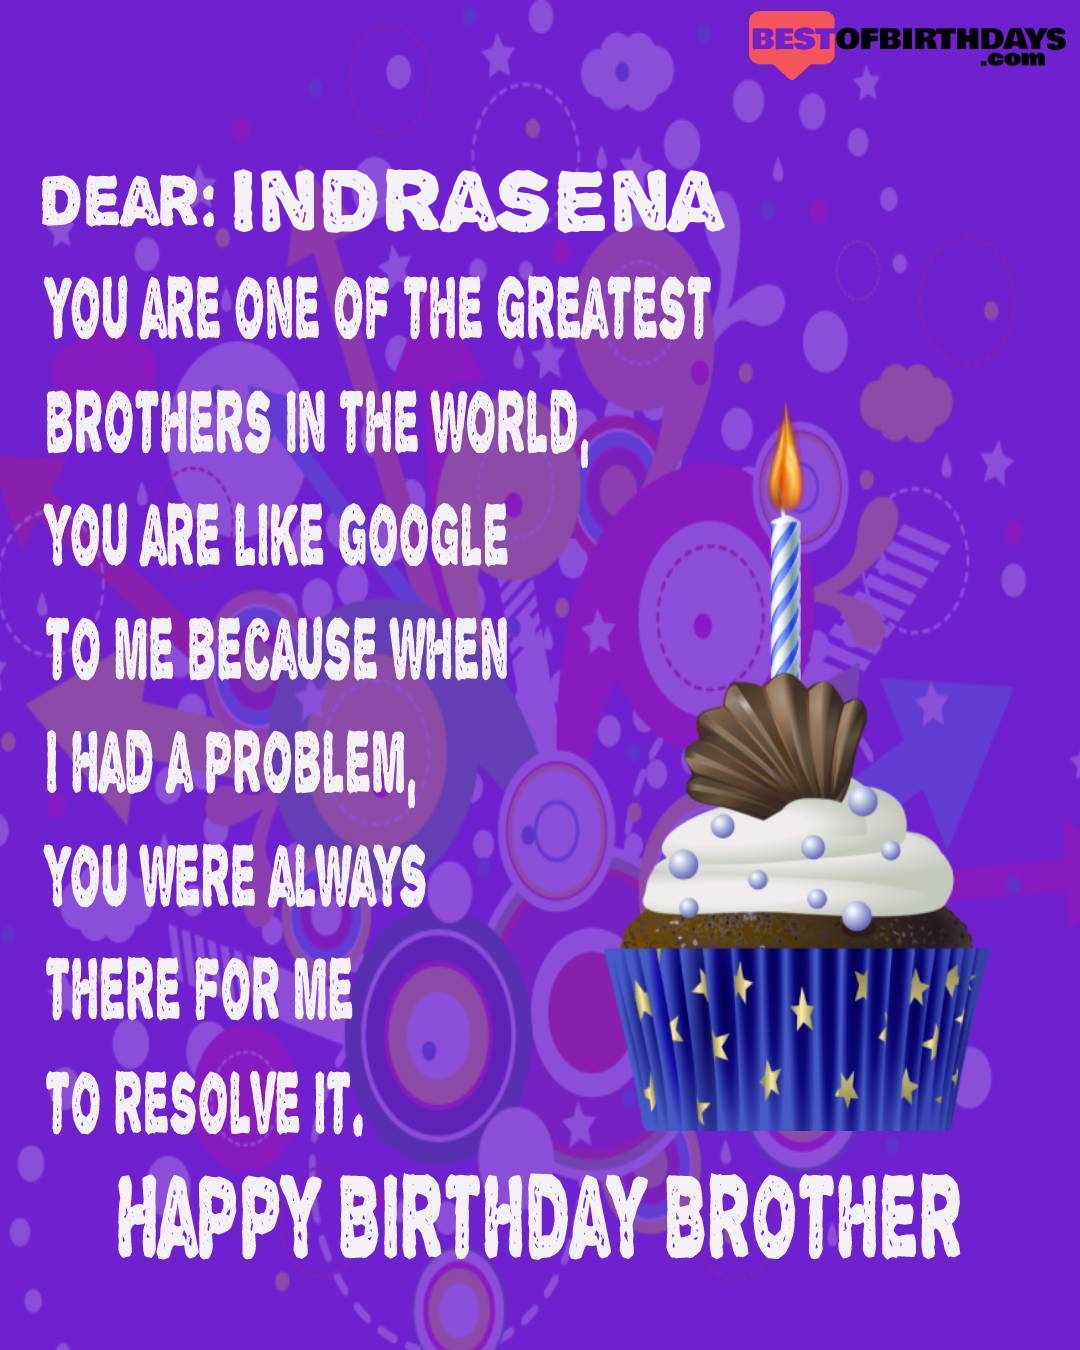 Happy birthday indrasena bhai brother bro